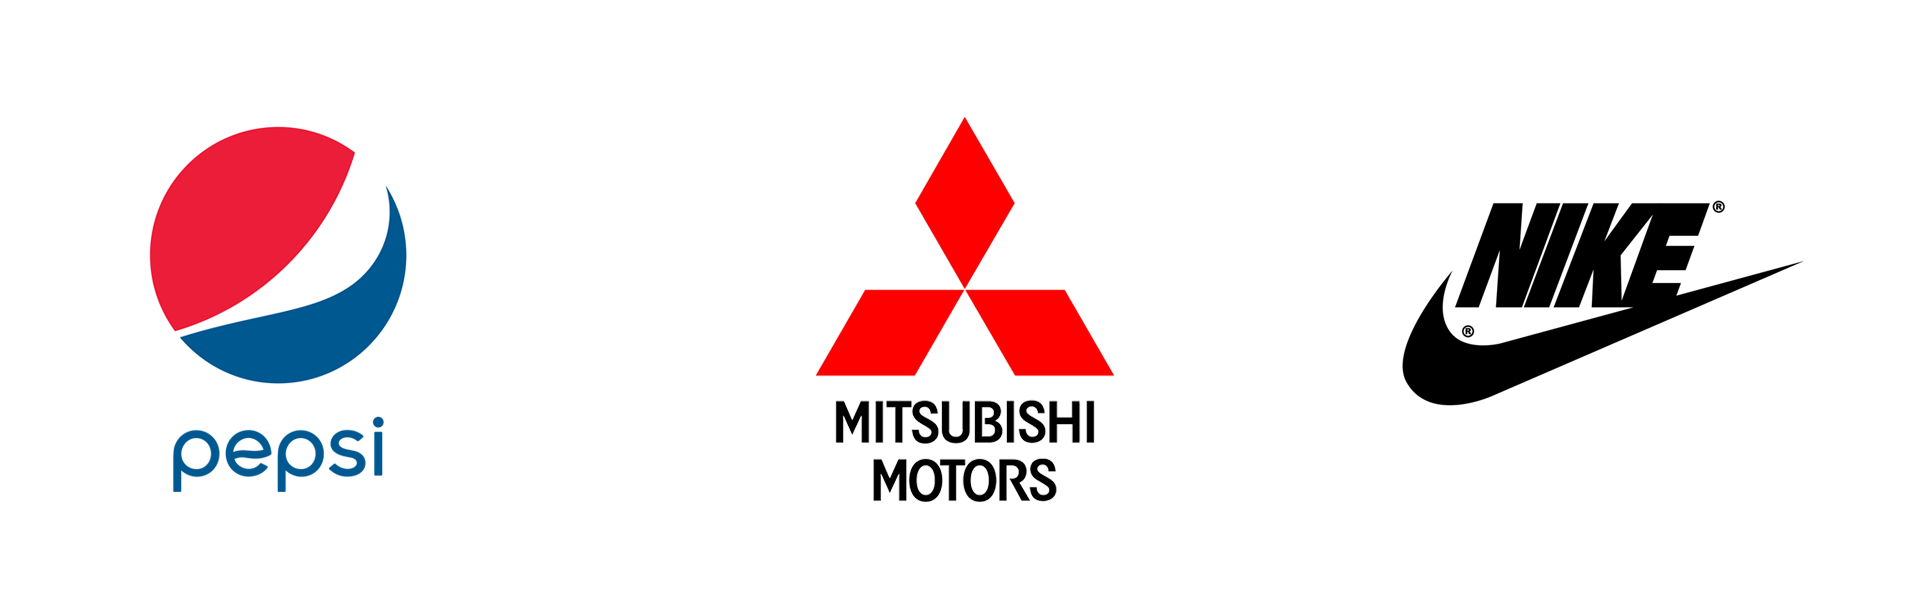 Abstract Logotype, Pepsi, Mitsubishi Motors, Nike